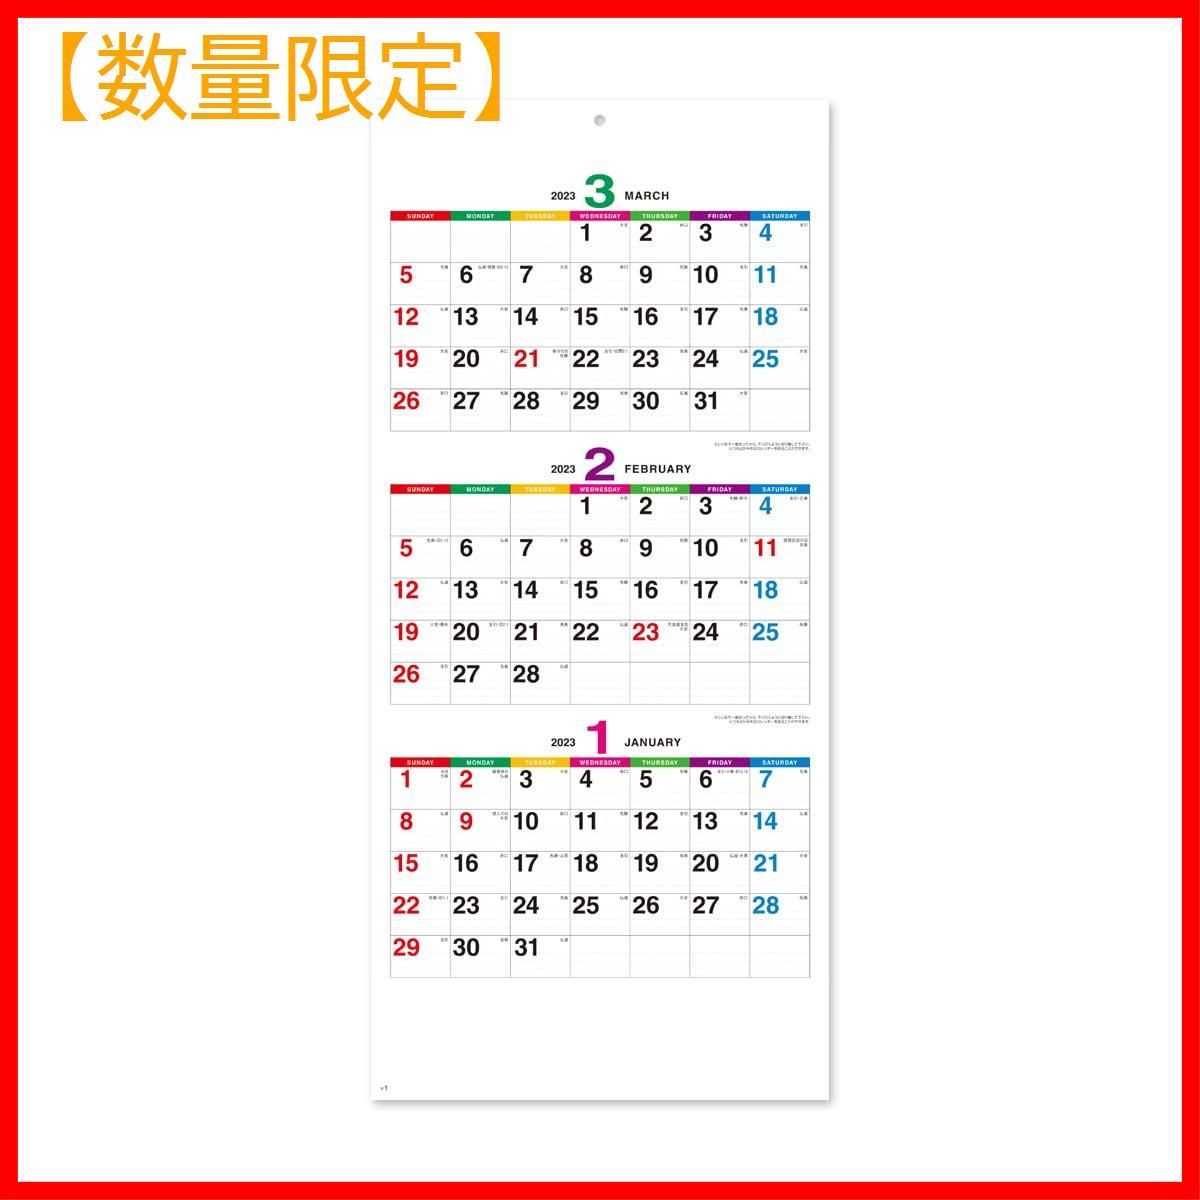 【数量限定】NK162 3か月文字 カラーラインメモ 壁掛け カレンダー 202-0